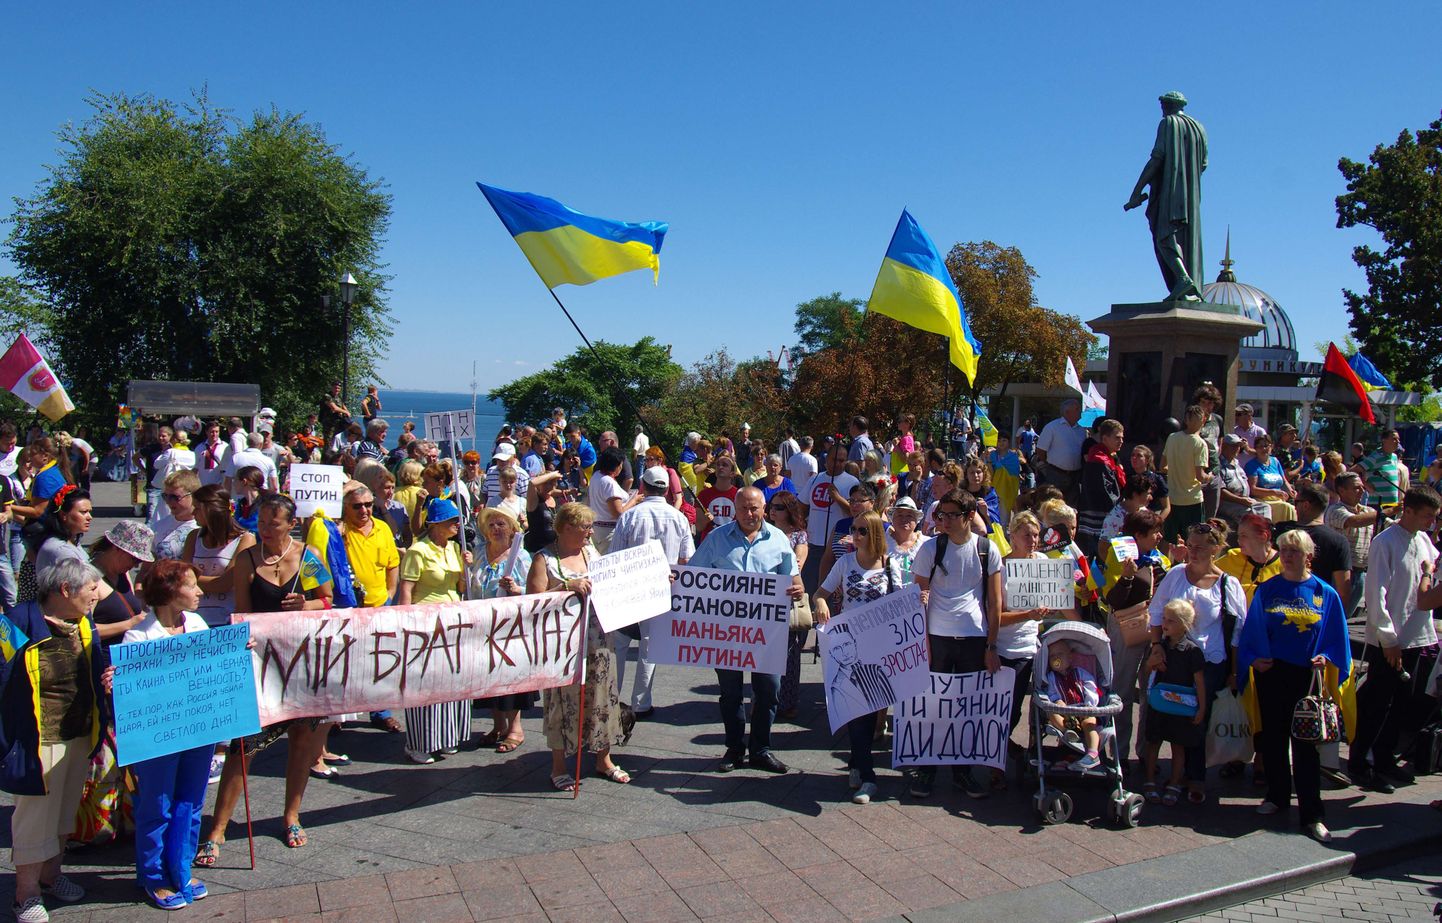 Inimesed hoiavad Lõuna-Ukrainas asuvas Odessa linnas silte, millel kirjas «Venelased peatage maniakk Putin!», «Putin sa oled purjus. Mine koju!», «Putin, mine koju!» ja "Mu vend on Kain». protest Vene presidendi Vladimir Putini vastu toimus 30. augustil.